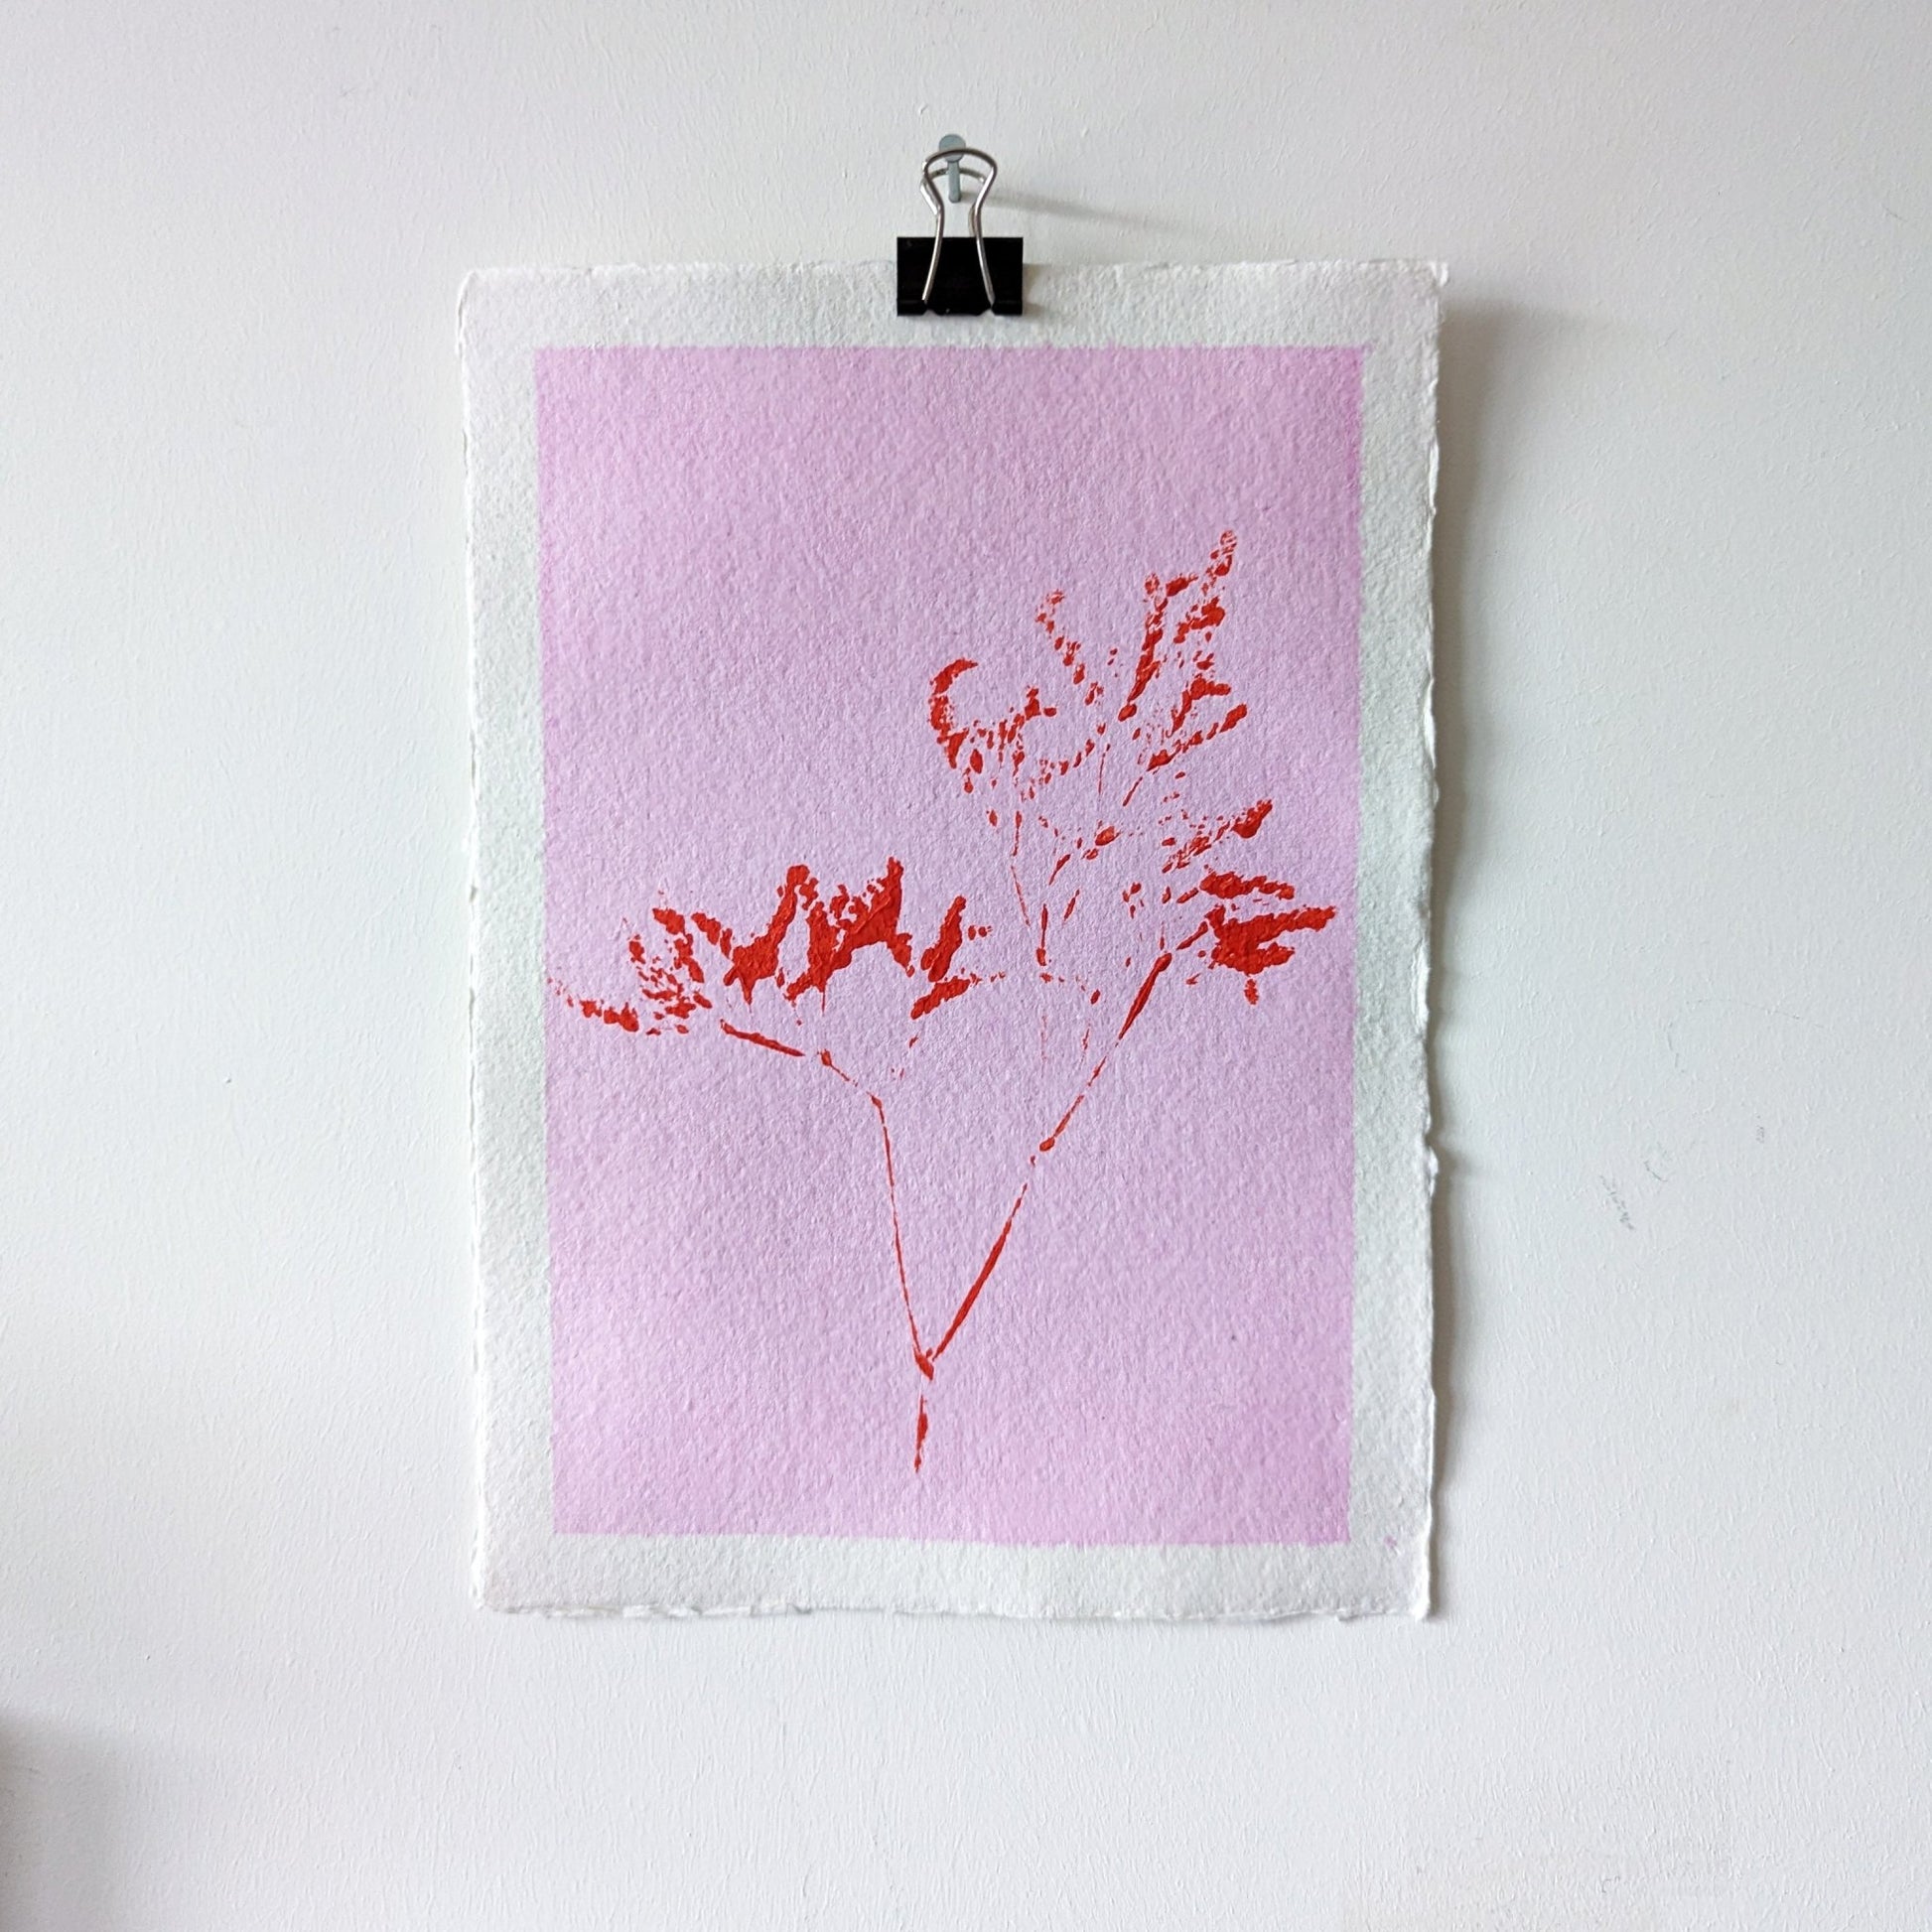 Pink & Orange printed plant - Jasmyn Cheng Art